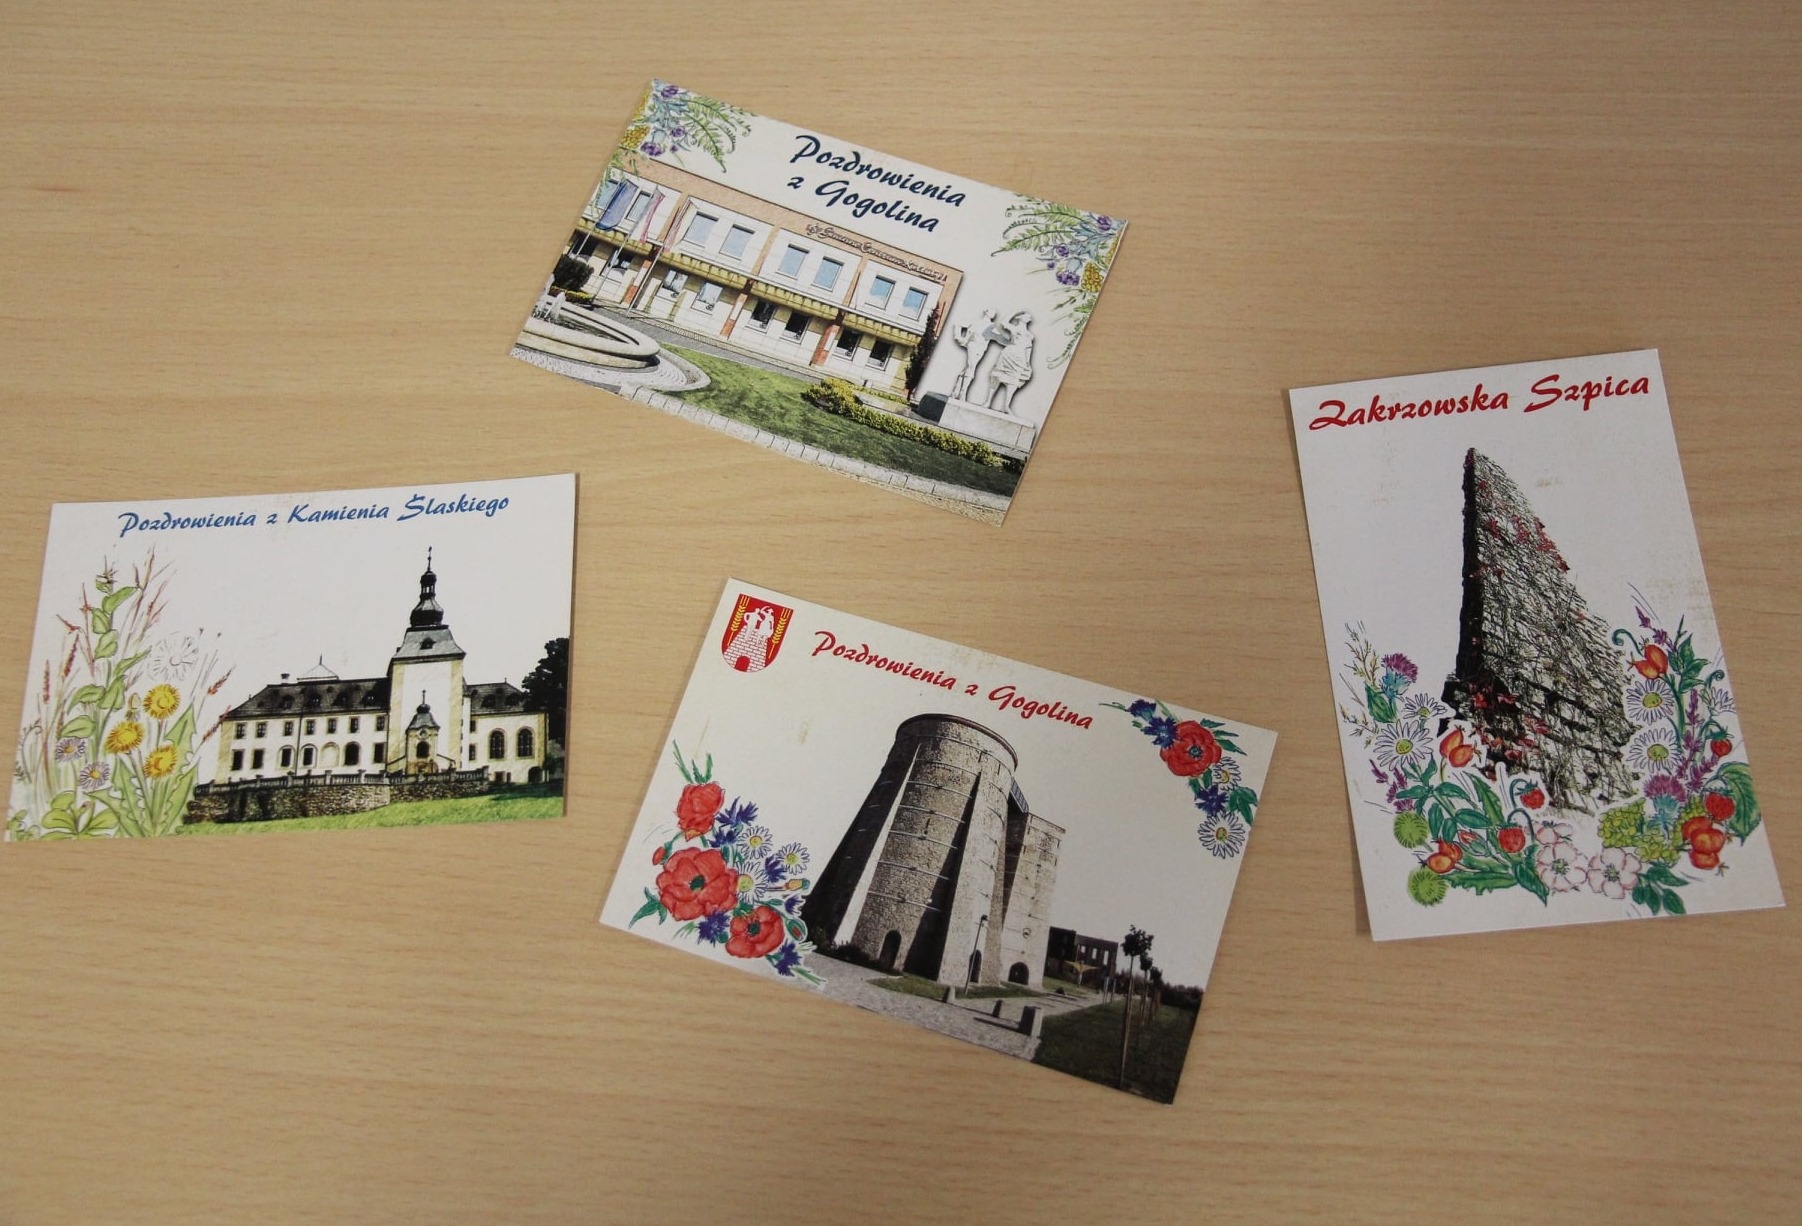 pocztówki przedstawiające atrakcje naszej gminy, z motywem regionalnych ziół i kwiatów oraz z ich nazwami w gwarze śląskiej